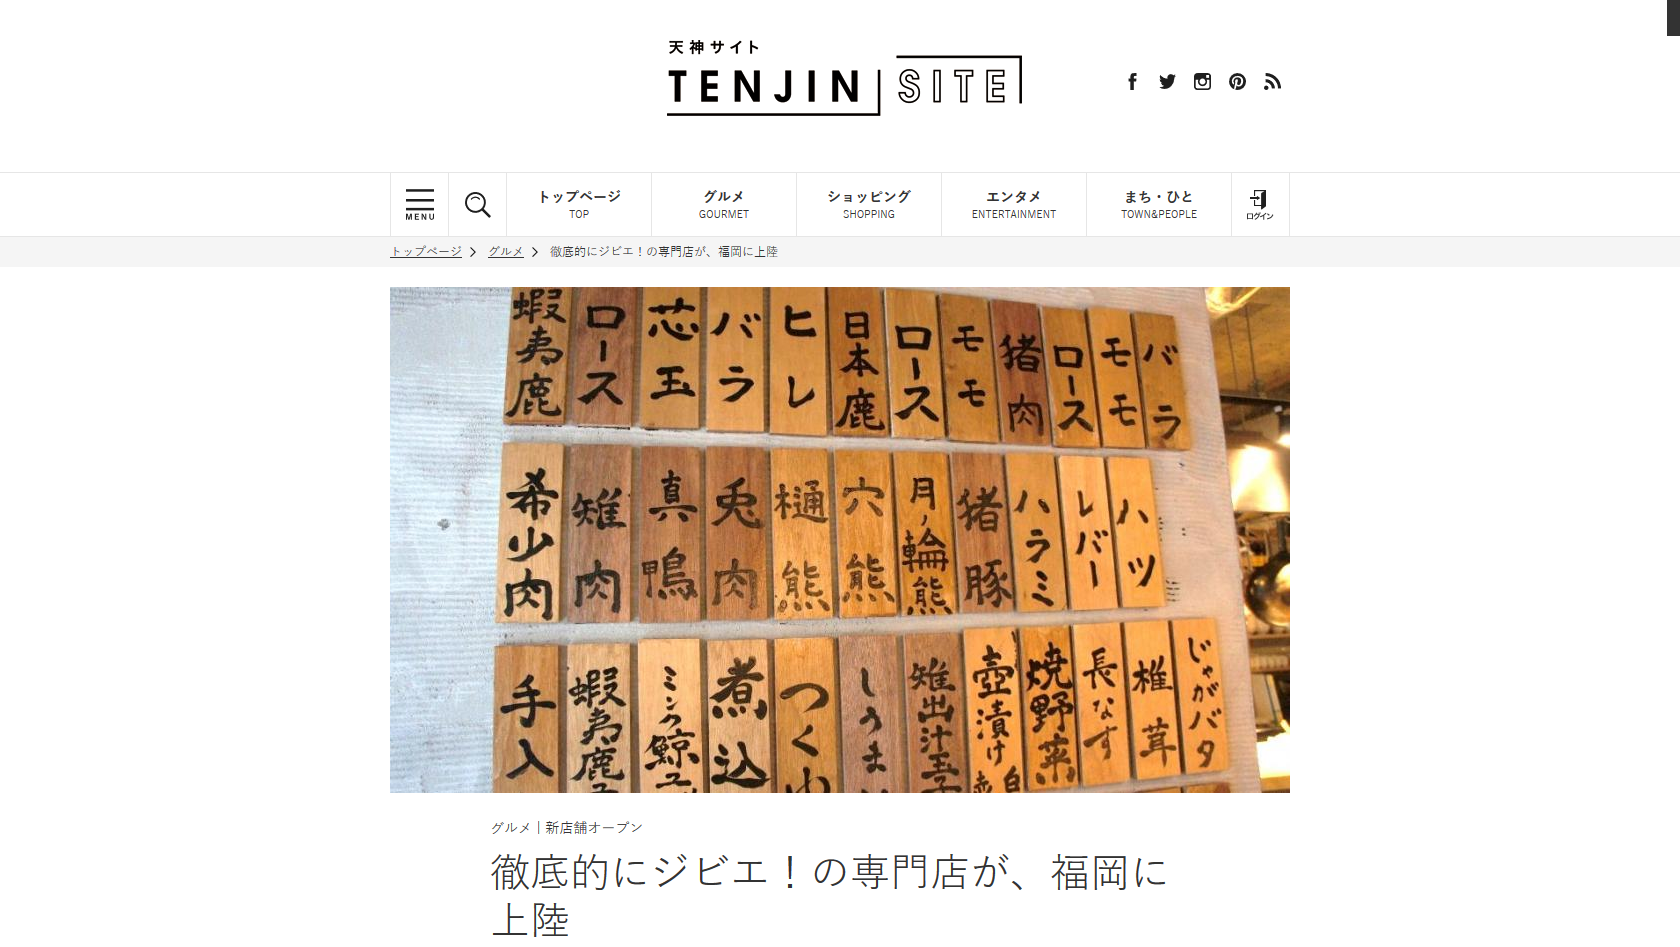 Webサイト“TENJIN SITE”に【焼ジビエ罠 手止メ 警固】が紹介されました。